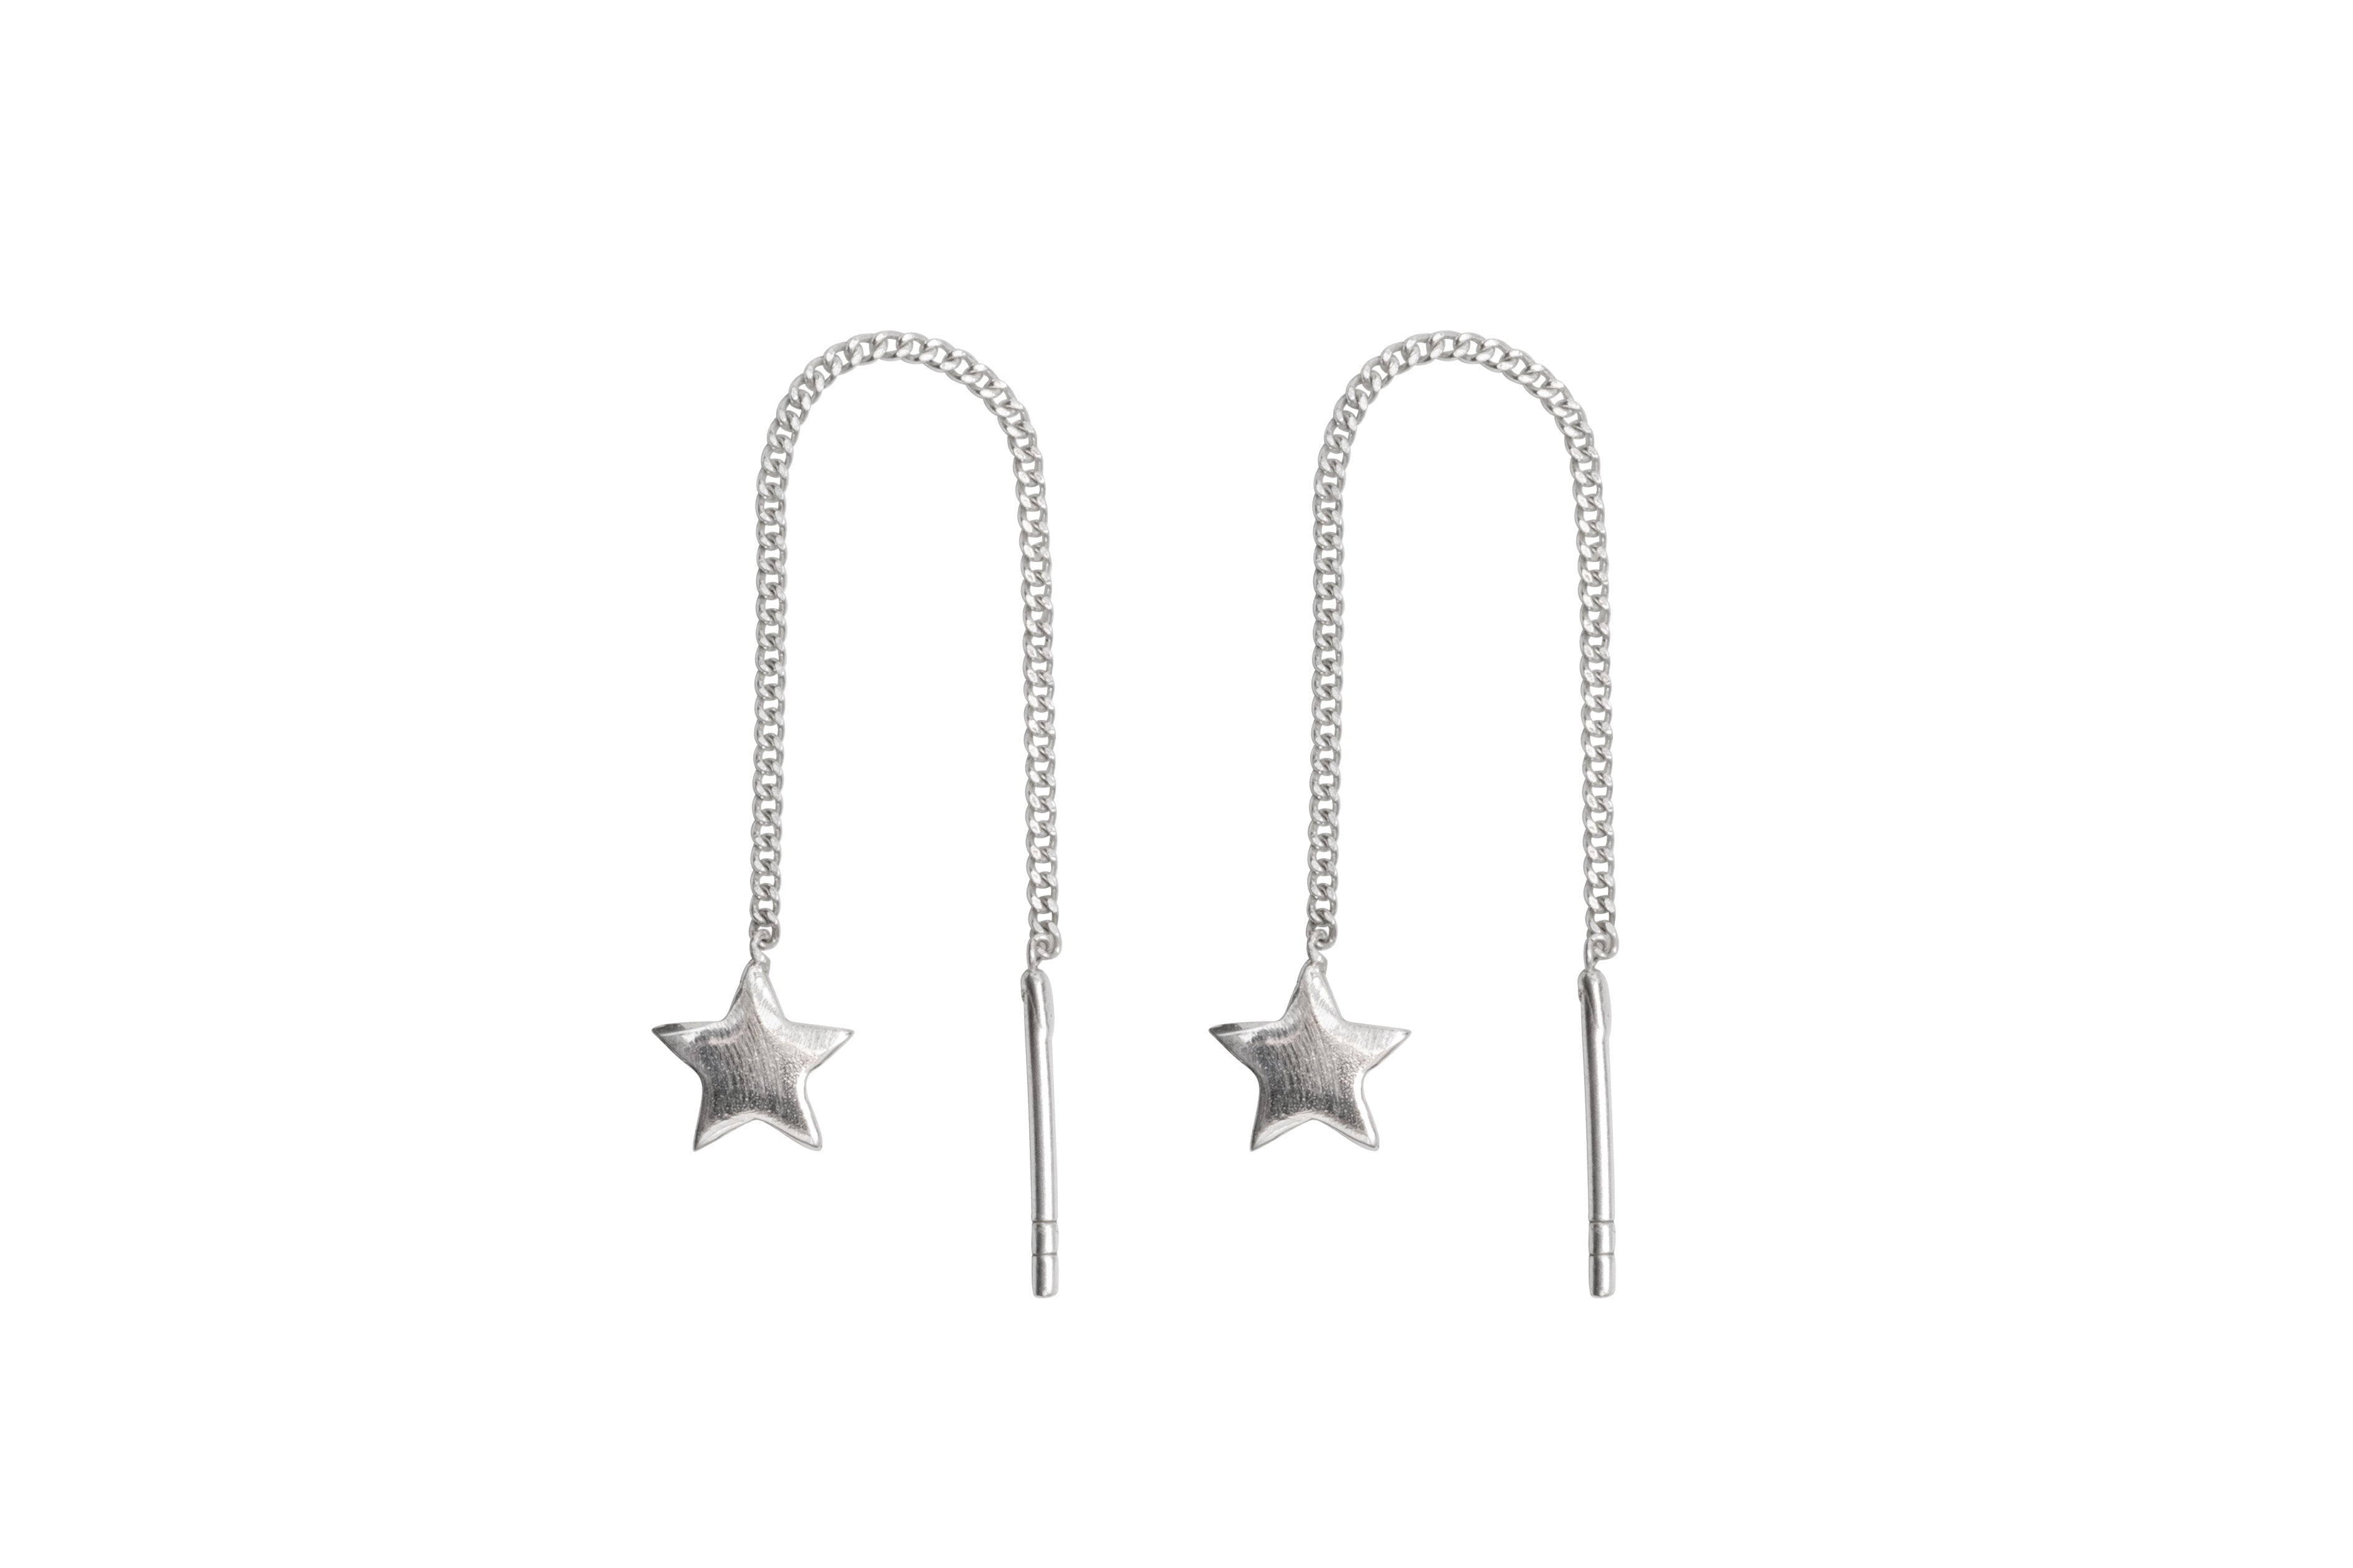 Threaded star earrings